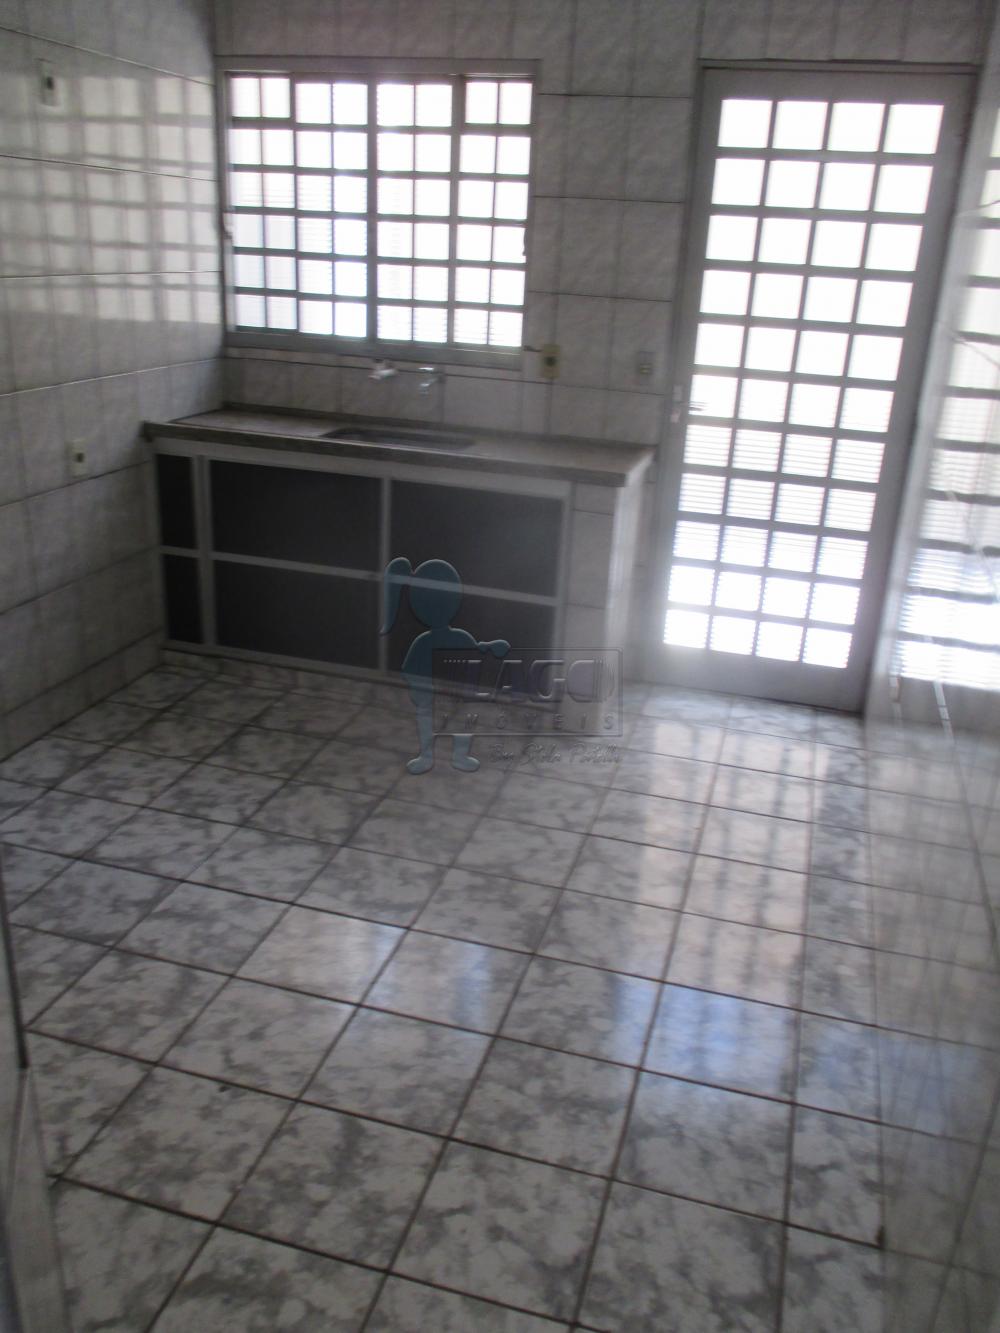 Alugar Casas / Padrão em Ribeirão Preto R$ 650,00 - Foto 4